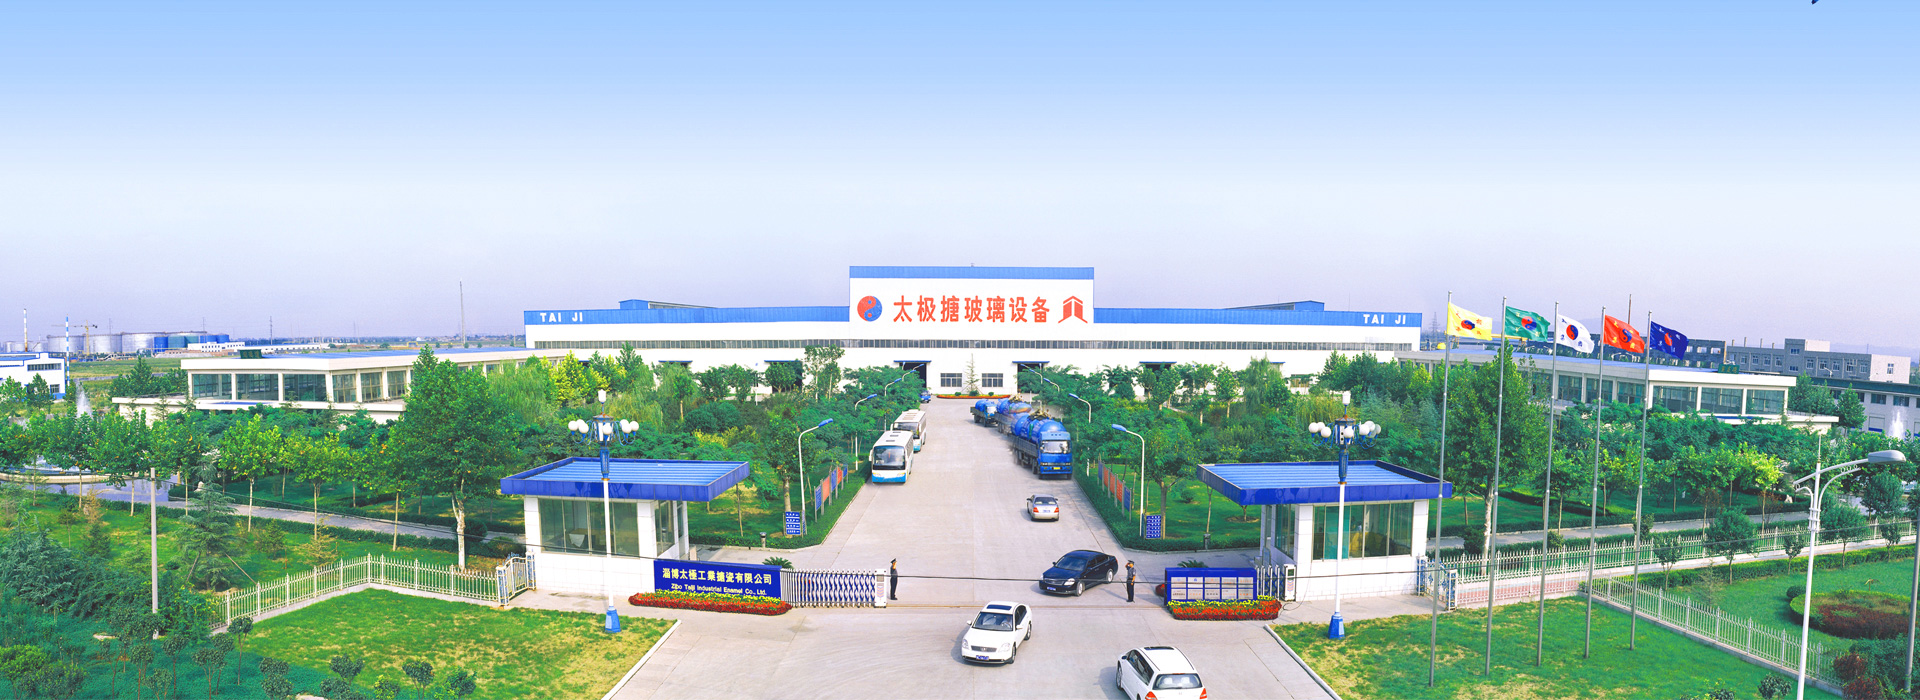 Zibo Taiji Industrial Enamel Co., Ltd